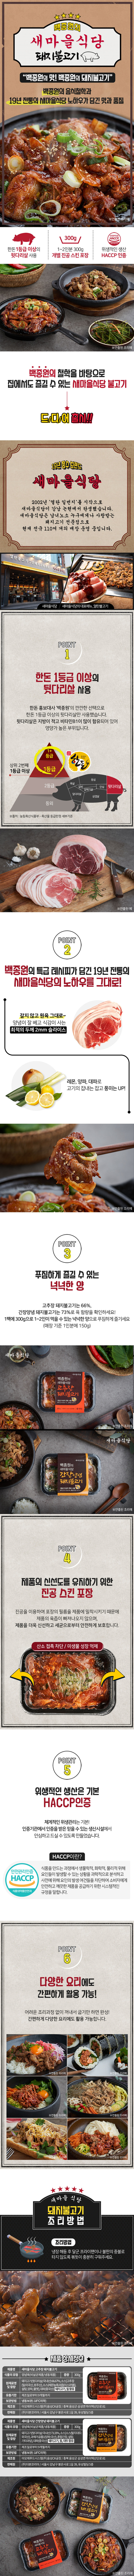 백종원 새마을식당]고추장/간장 한돈 불고기 10팩 - Ns홈쇼핑